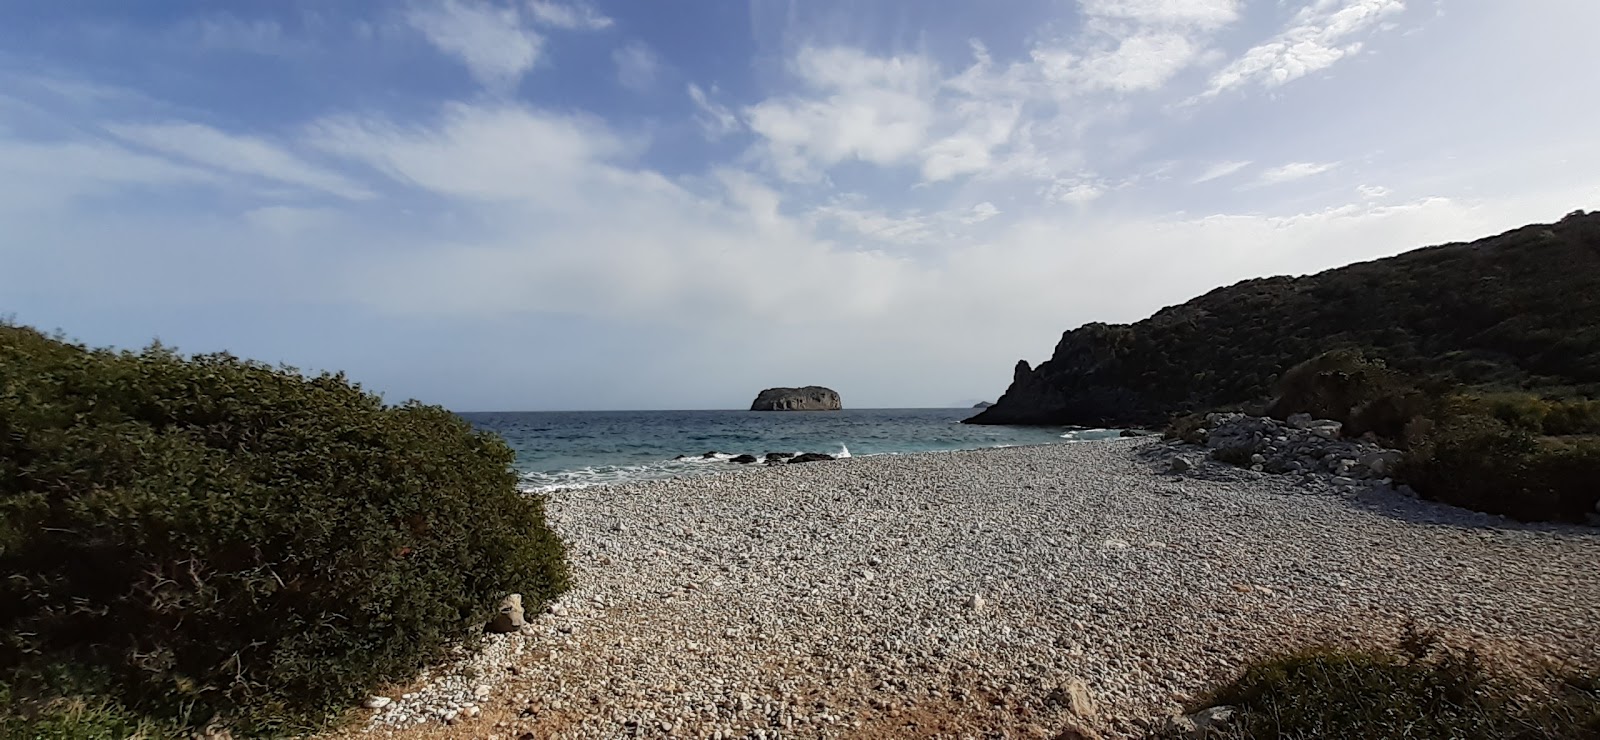 Fotografie cu Kochilas beach cu o suprafață de apa pură turcoaz